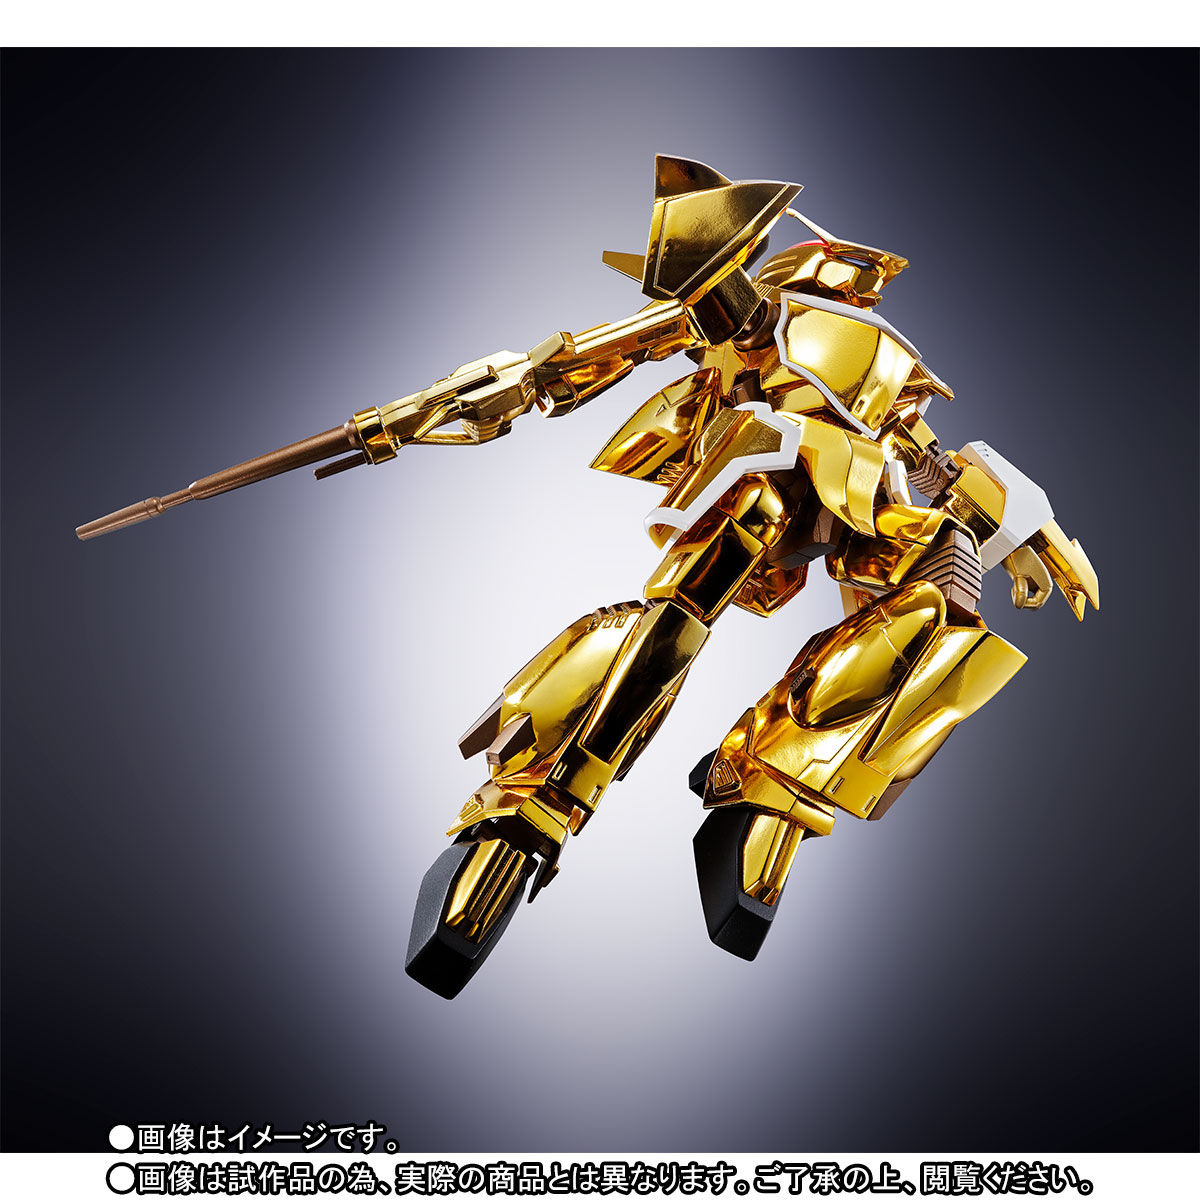 【限定販売】魂SPEC×HI-METAL R『ザカール』蒼き流星SPTレイズナー 可動フィギュア-005